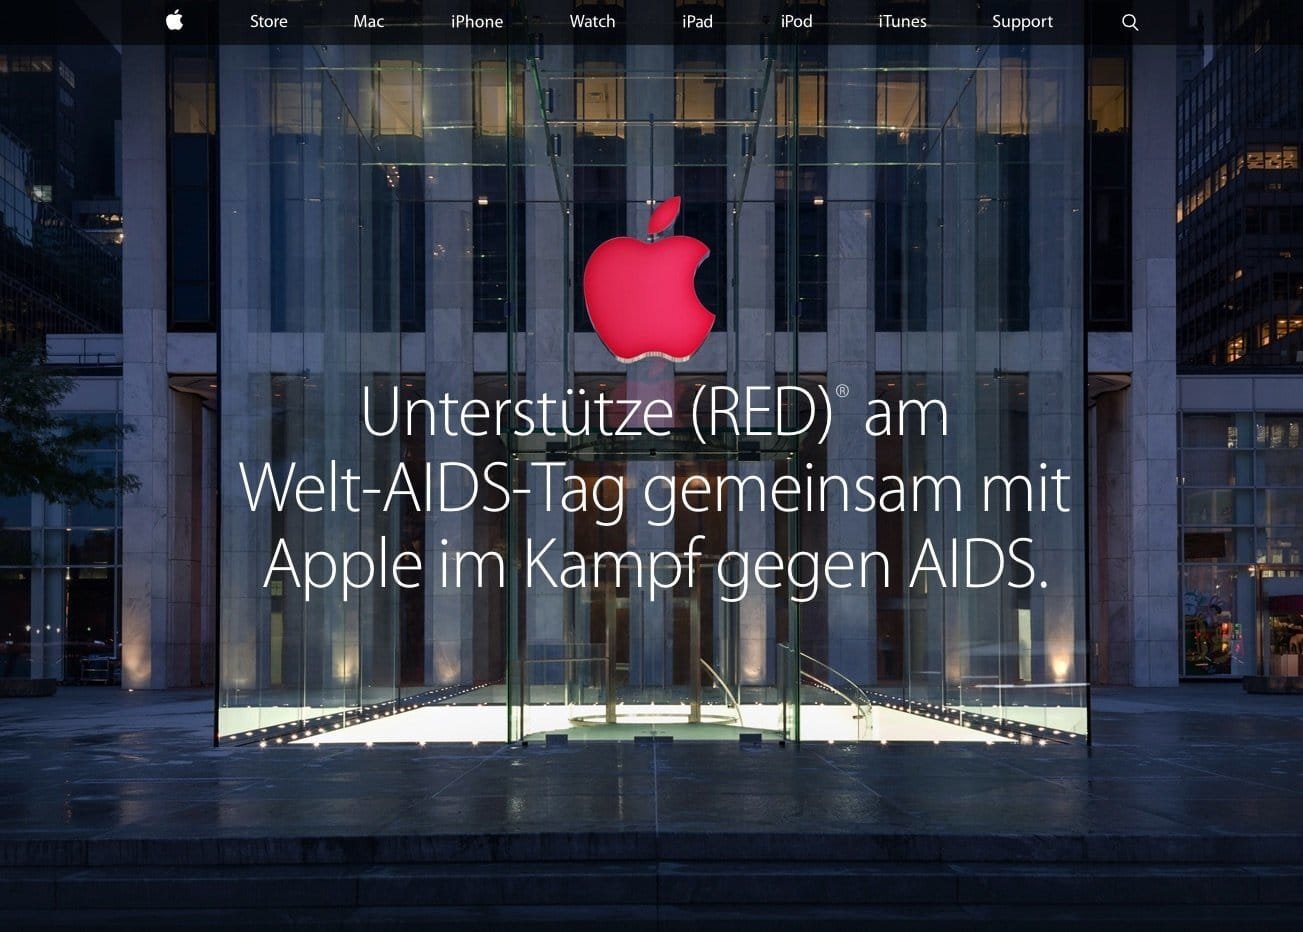 Apple-Homepage ohne Black Friday 2014 Hinweis